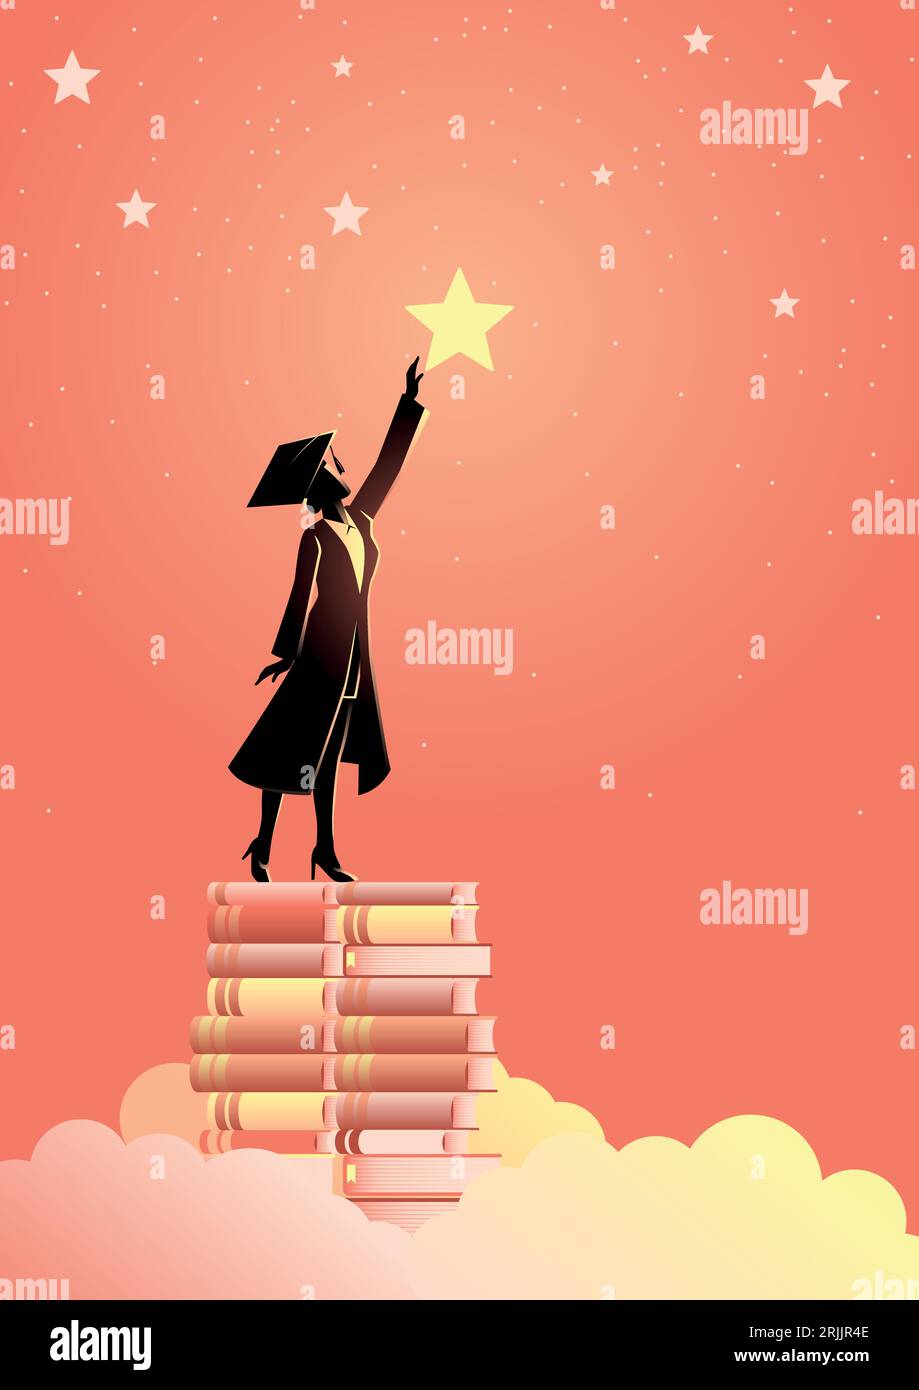 Konzept Illustration einer Frau in Graduierung Toga Reichweite für die Sterne durch die Verwendung von Büchern als Plattform. Bildungskonzept. Stock Vektor